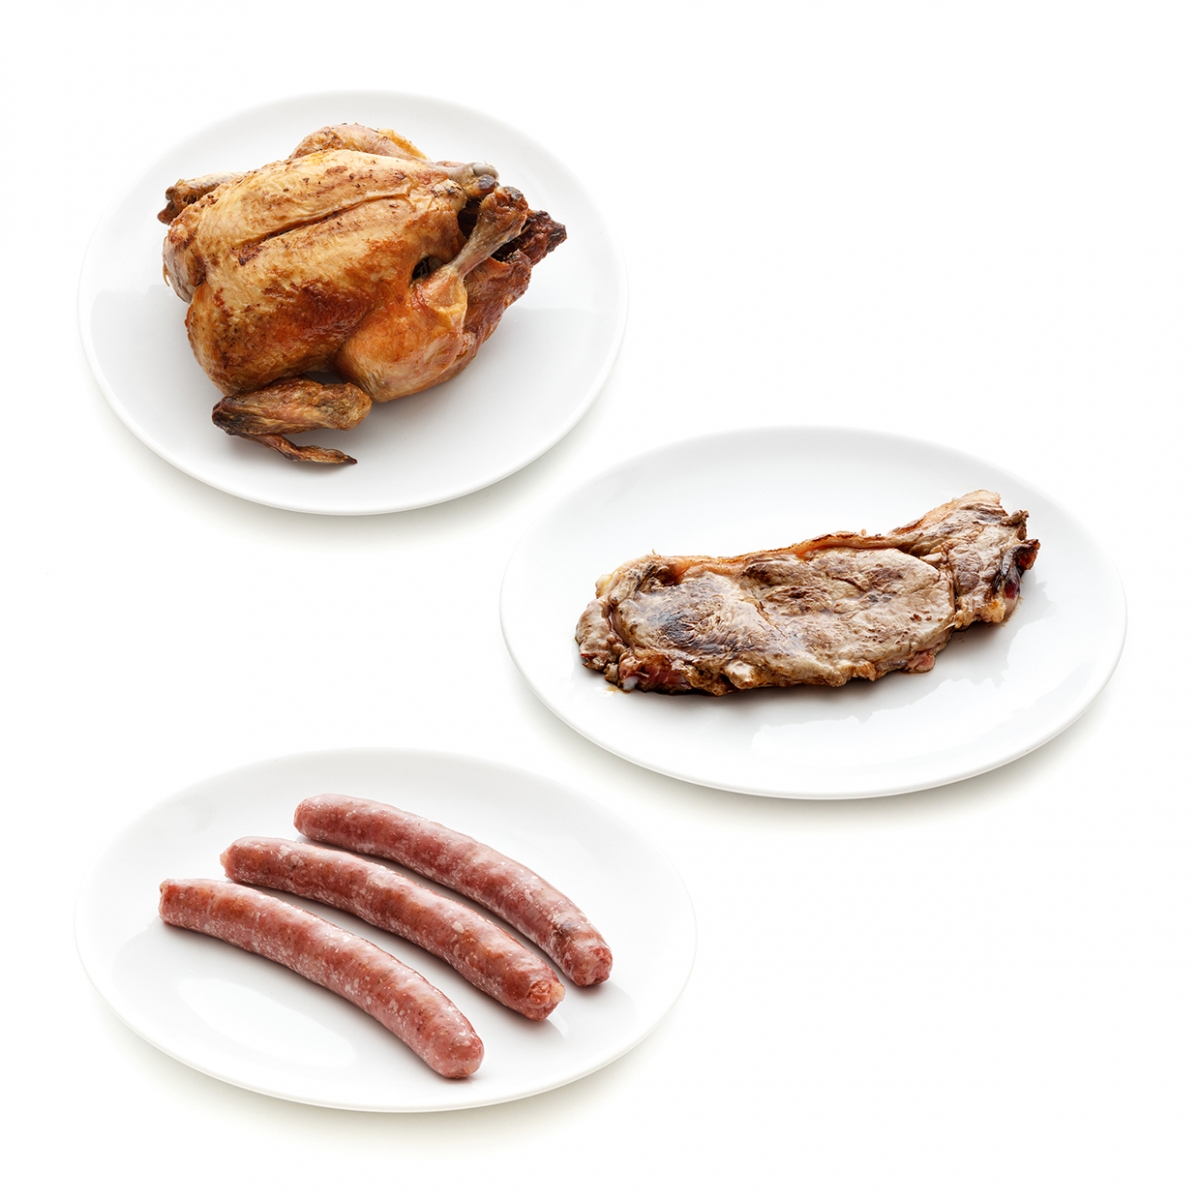 Imagen en la que se ven tres productos cárnicos: salchichas, pollo y un filete